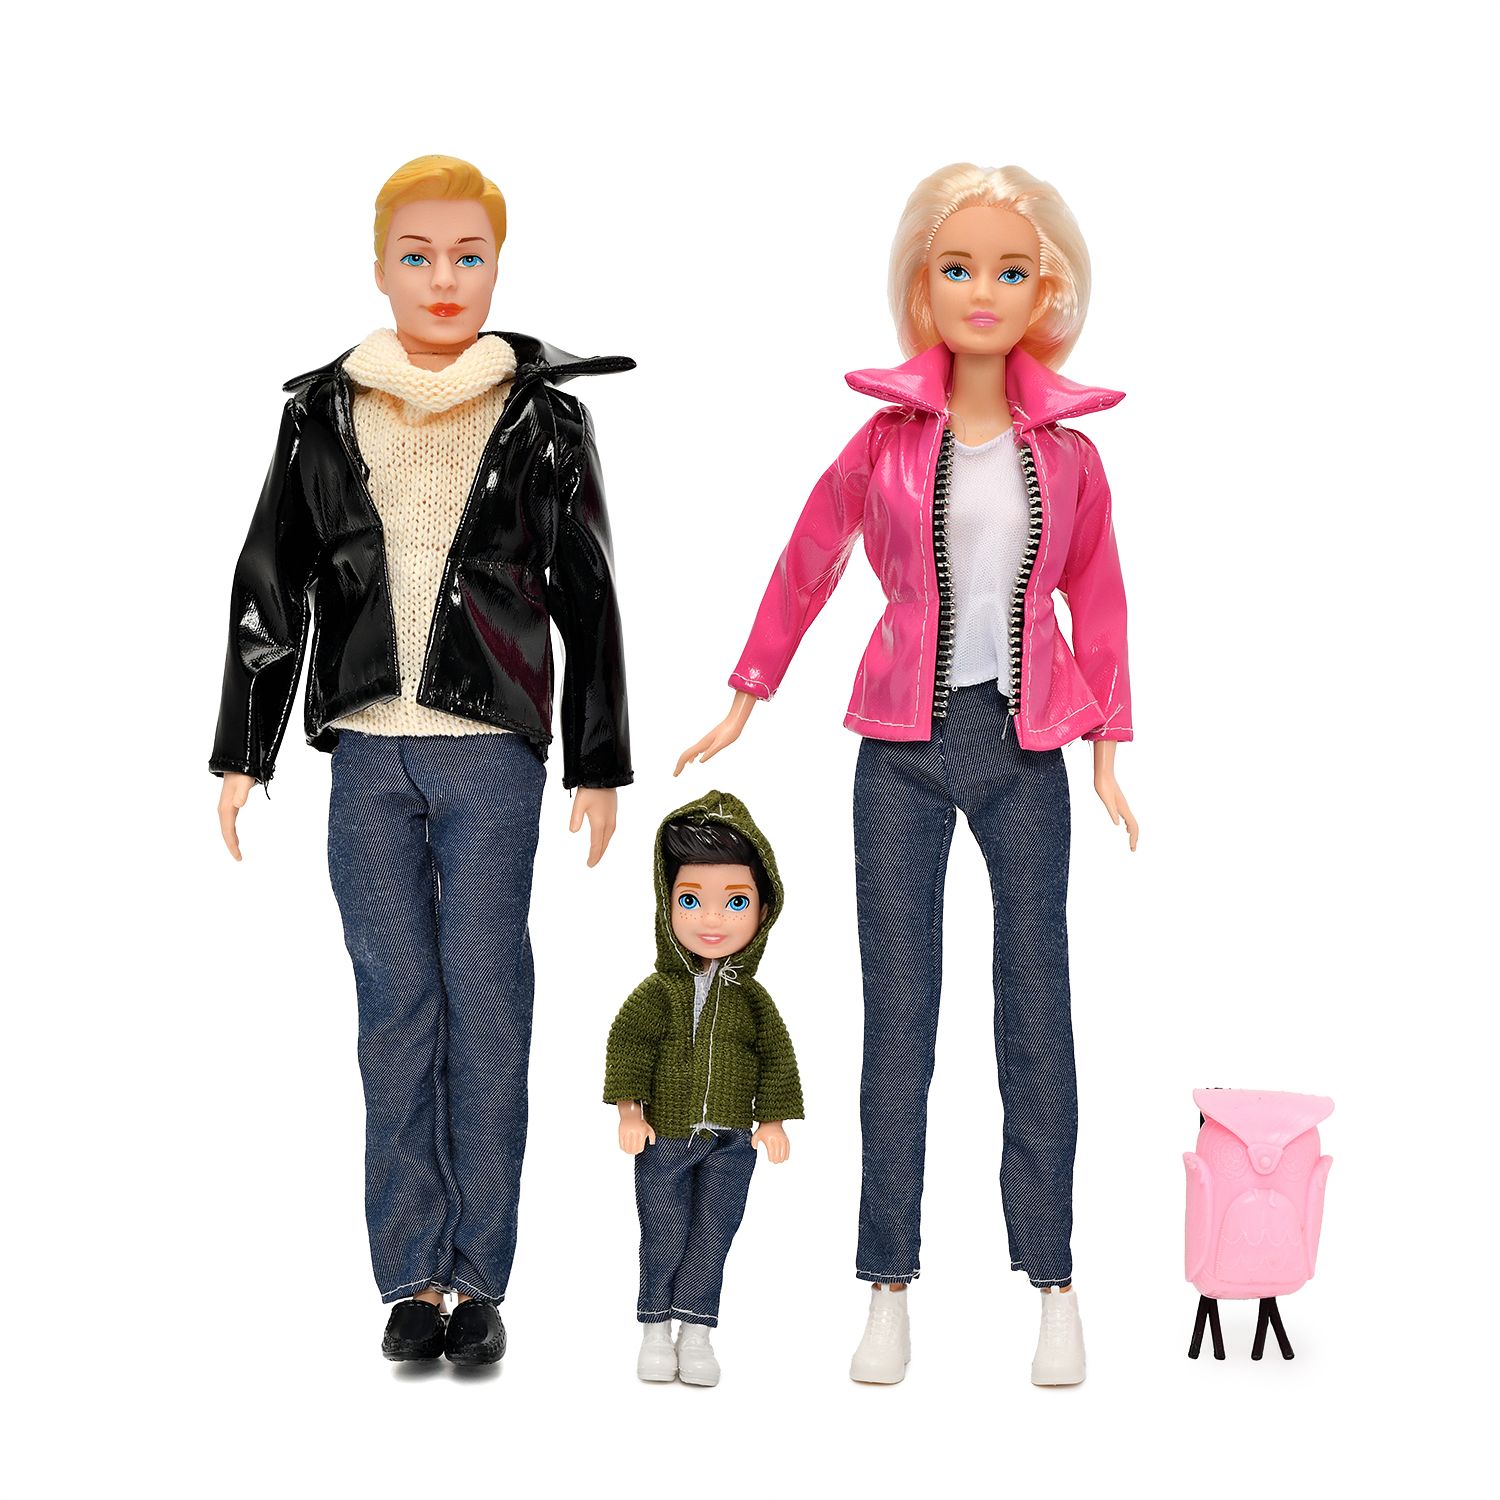 Набор из 3х кукол S-S Семья на прогулке одежда и аксессуары в комплекте набор подставок под горячее genlex снеговик на прогулке 4 шт